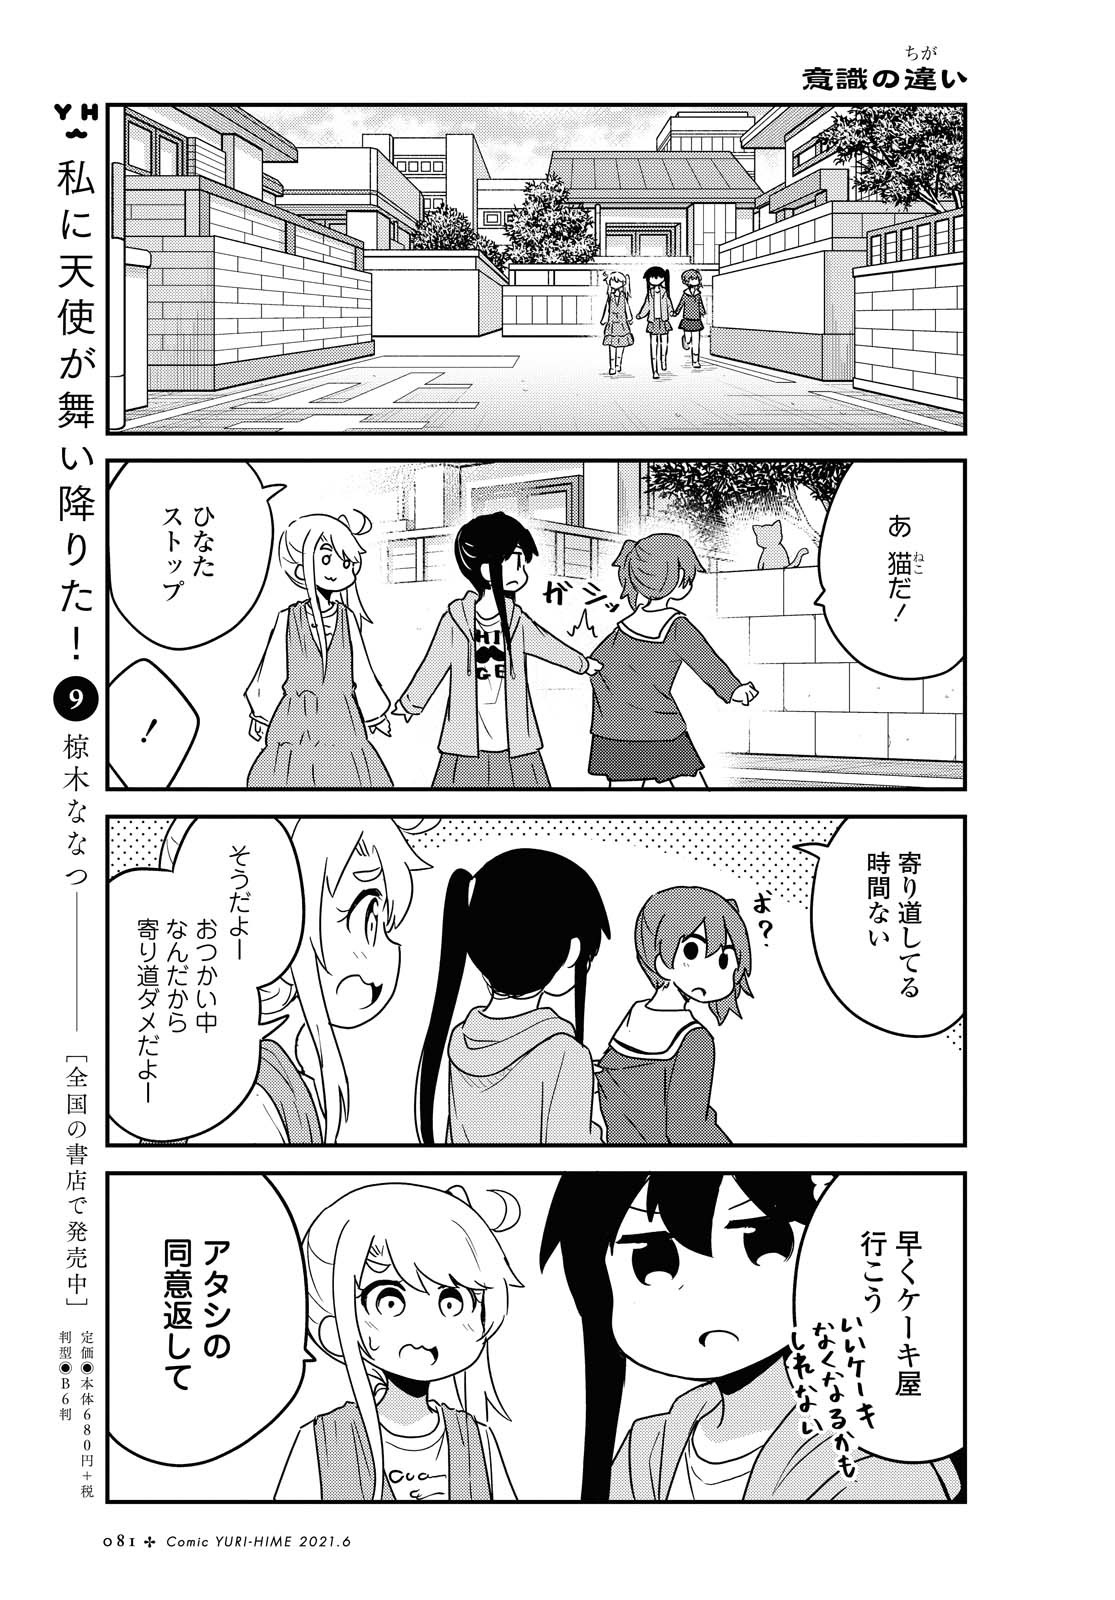 Watashi ni Tenshi ga Maiorita! - Chapter 81 - Page 5